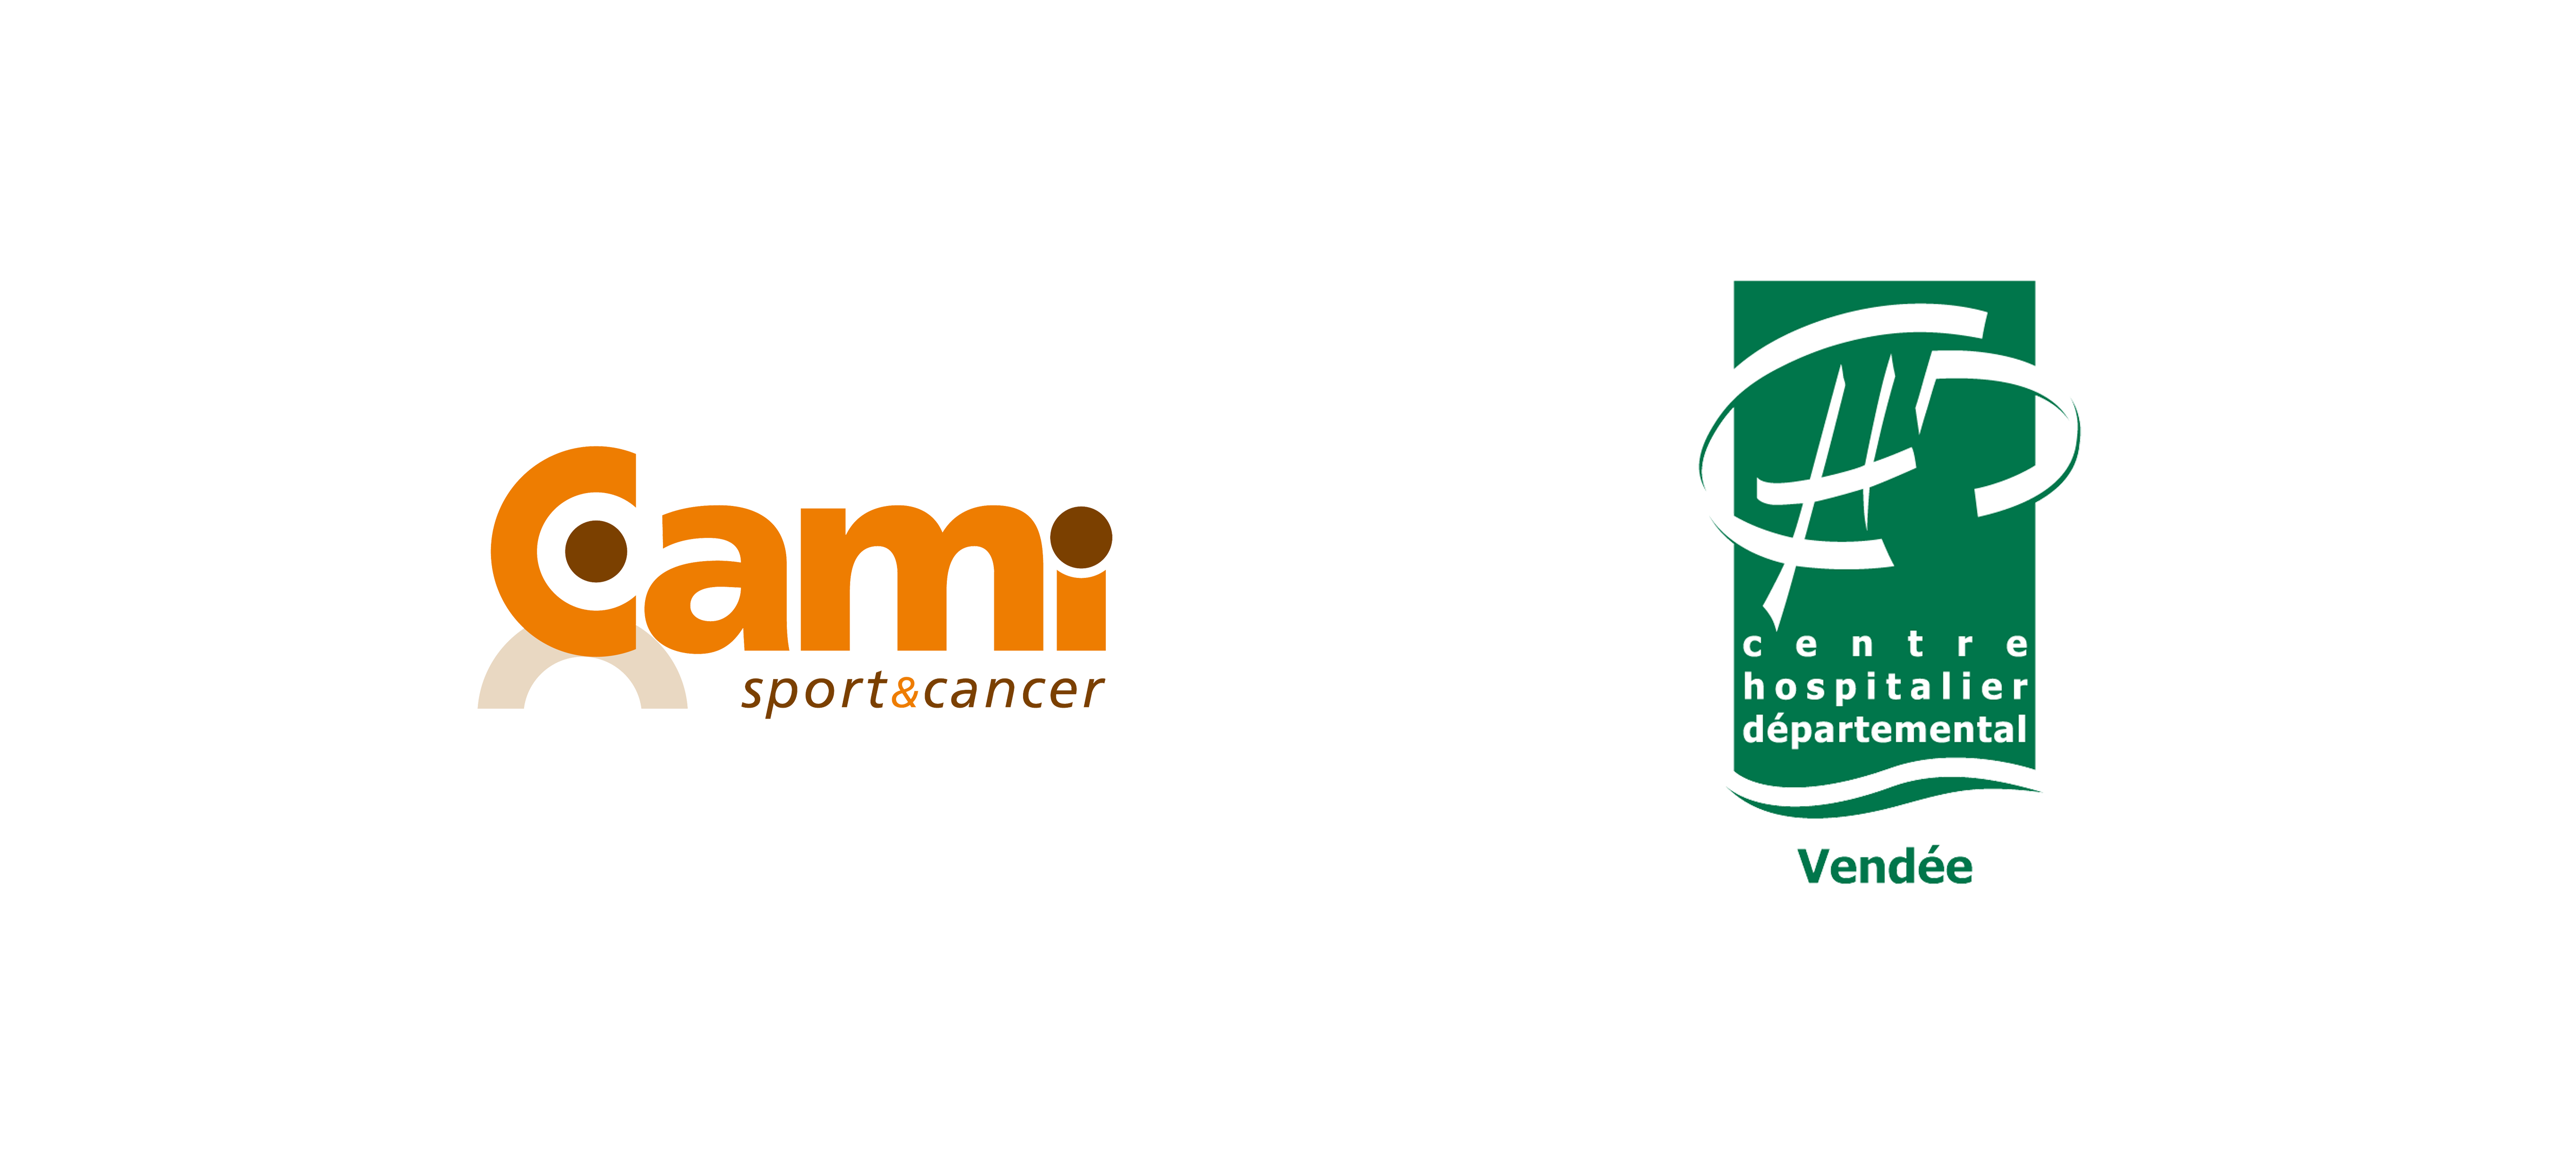 CAMI Sport & Cancer  Le Centre Hospitalier départemental Vendée s'associe  à la CAMI Sport & Cancer pour la création d'un nouveau Pôle Sport & Cancer  en Oncologie